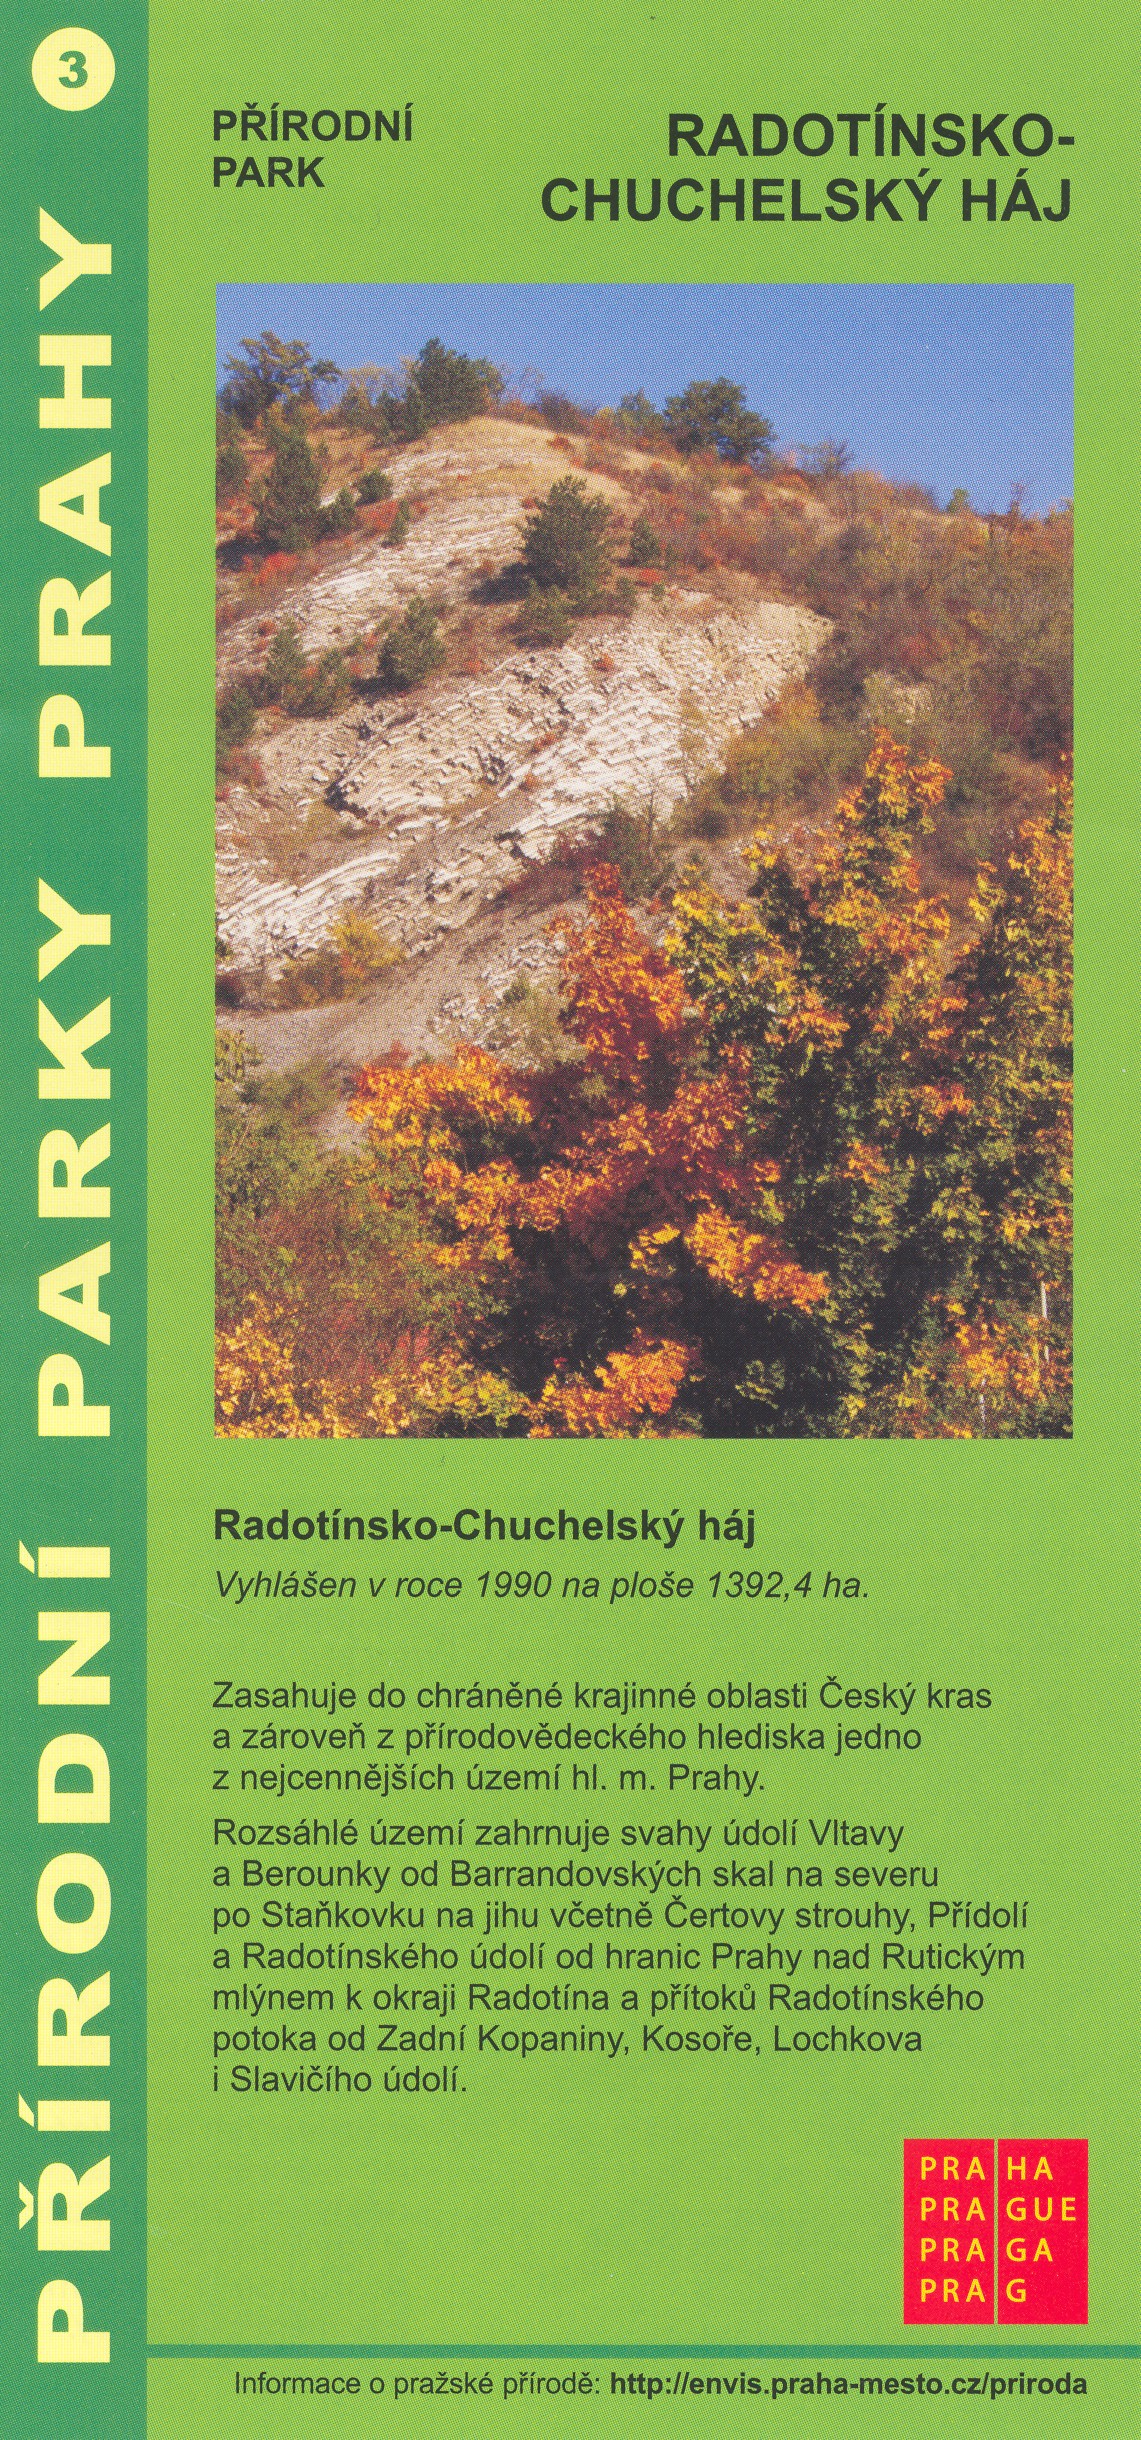 informační materiál Přírodní parky Prahy, č.3 - Radotínsko-Chuchelský háj